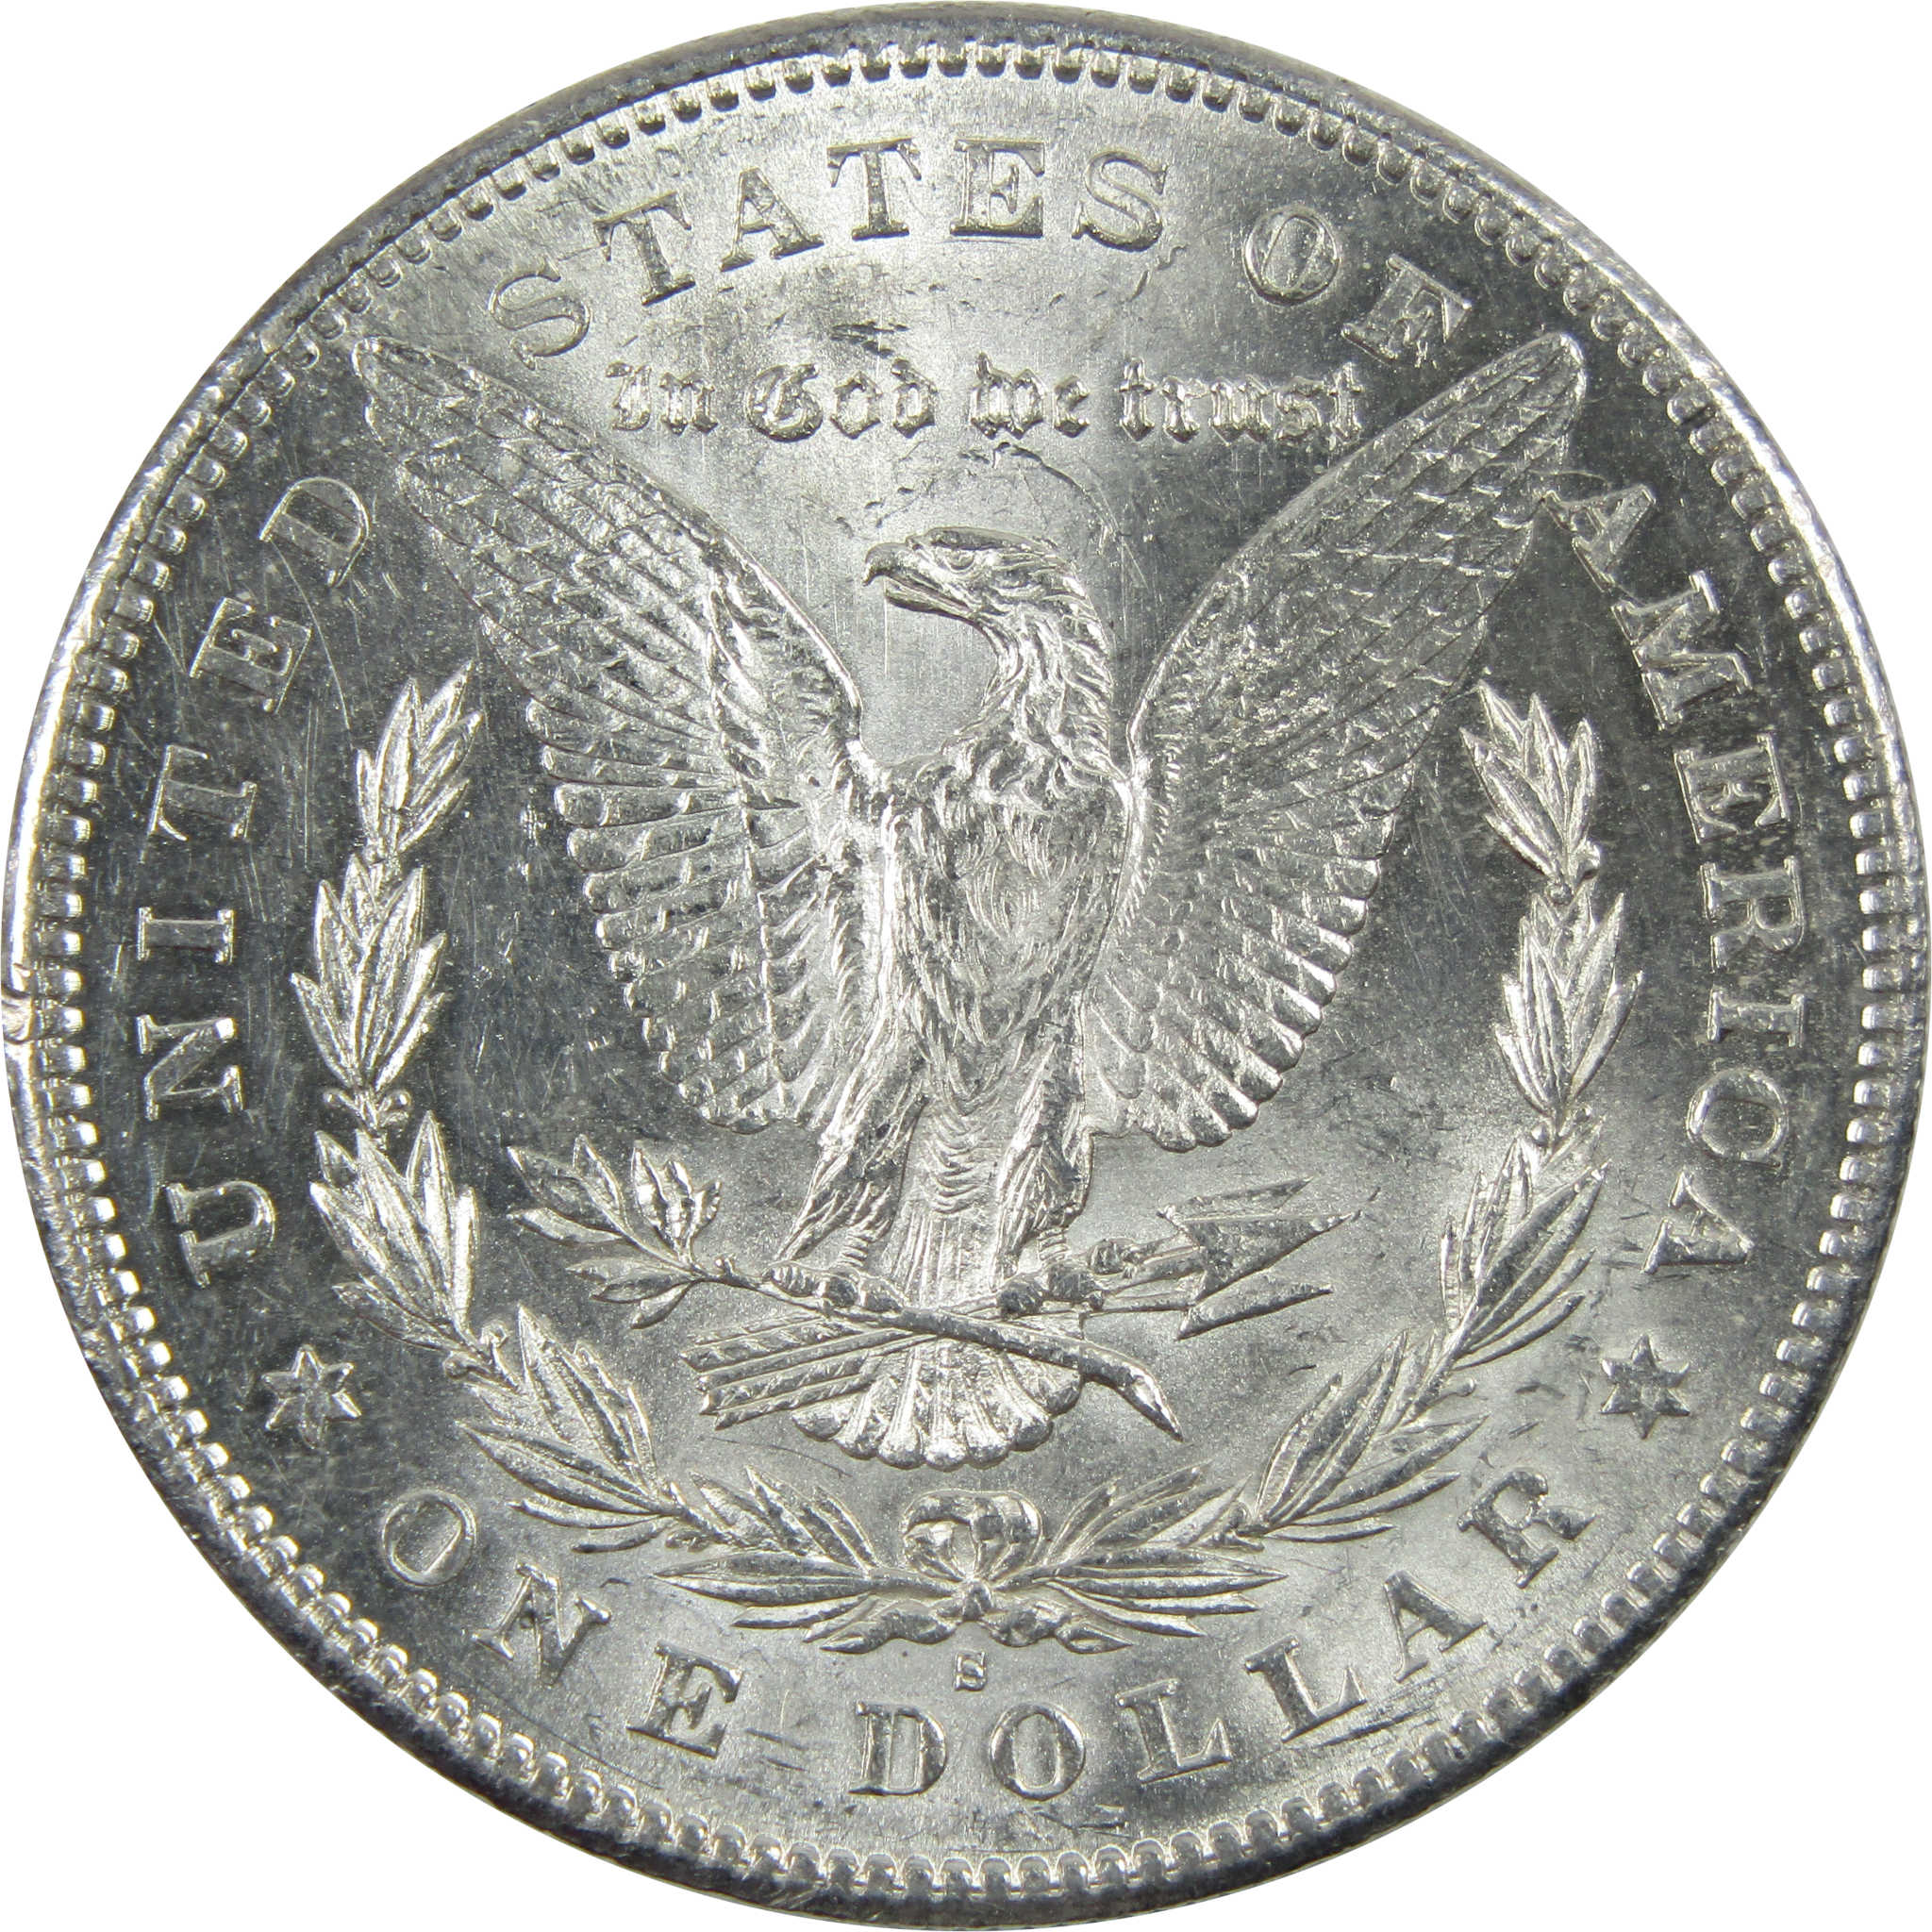 1878 S Morgan Dollar Borderline Uncirculated Silver $1 Coin SKU:I11693 - Morgan coin - Morgan silver dollar - Morgan silver dollar for sale - Profile Coins &amp; Collectibles